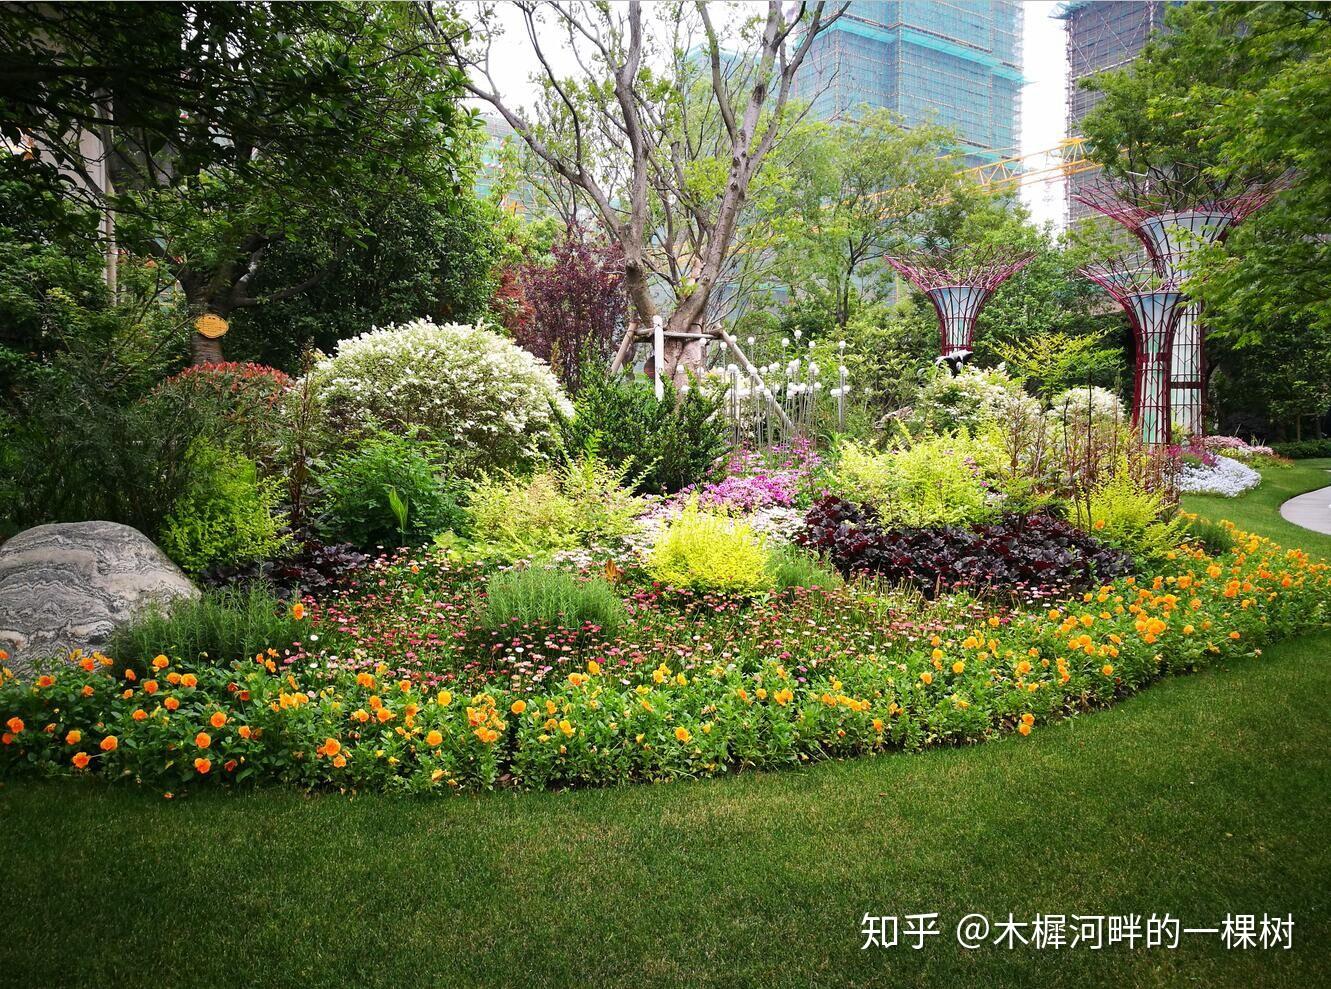 咋这么好看，活久见，植物与水景搭配才最美 - 深圳市绿雅坊景观园艺有限公司